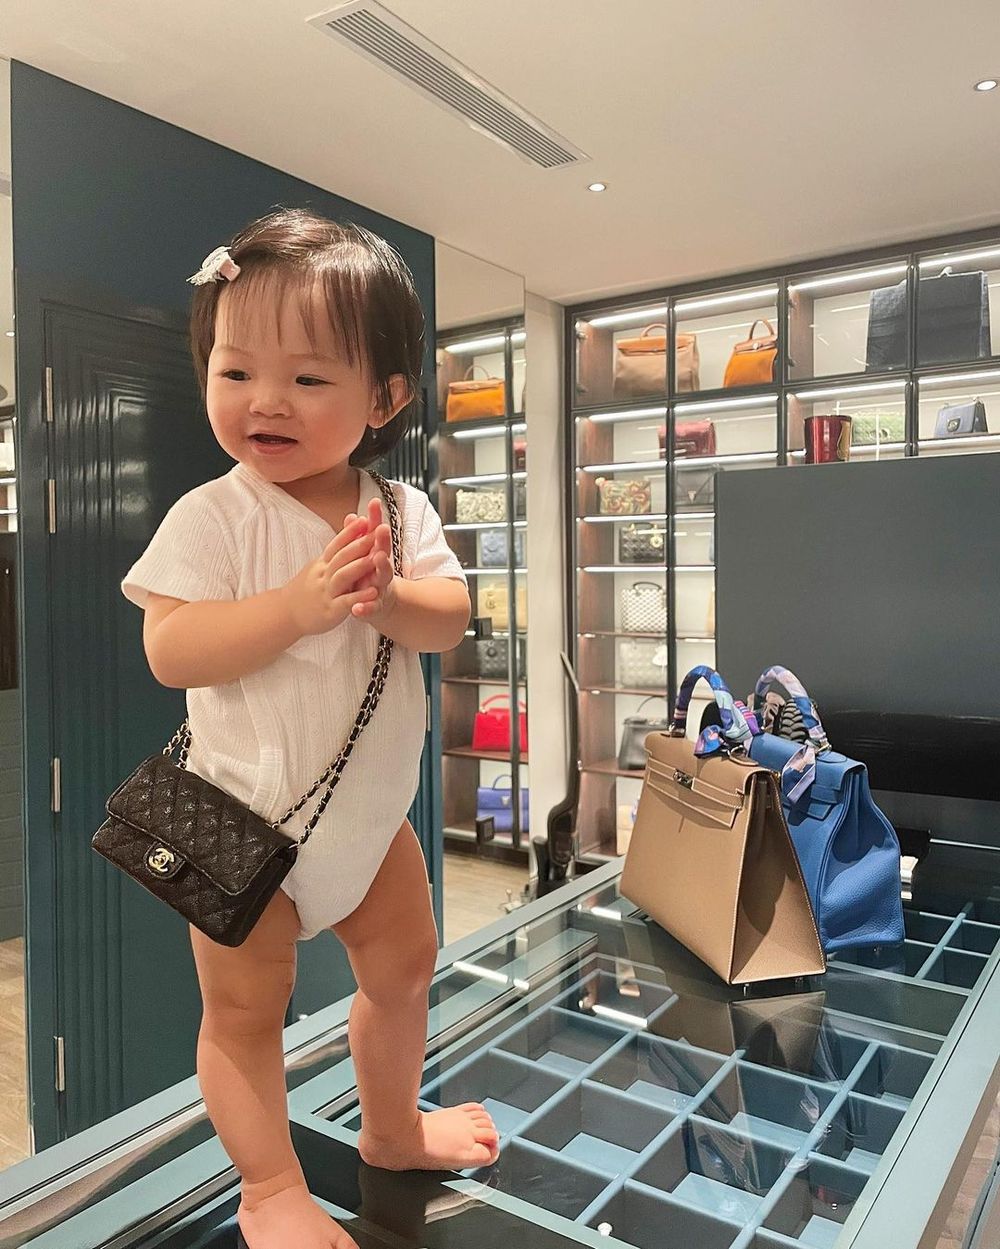  
Con gái Cường Đô La - Đàm Thu Trang được mẹ cho đeo túi xách đắt đỏ. (Ảnh: Instagram)